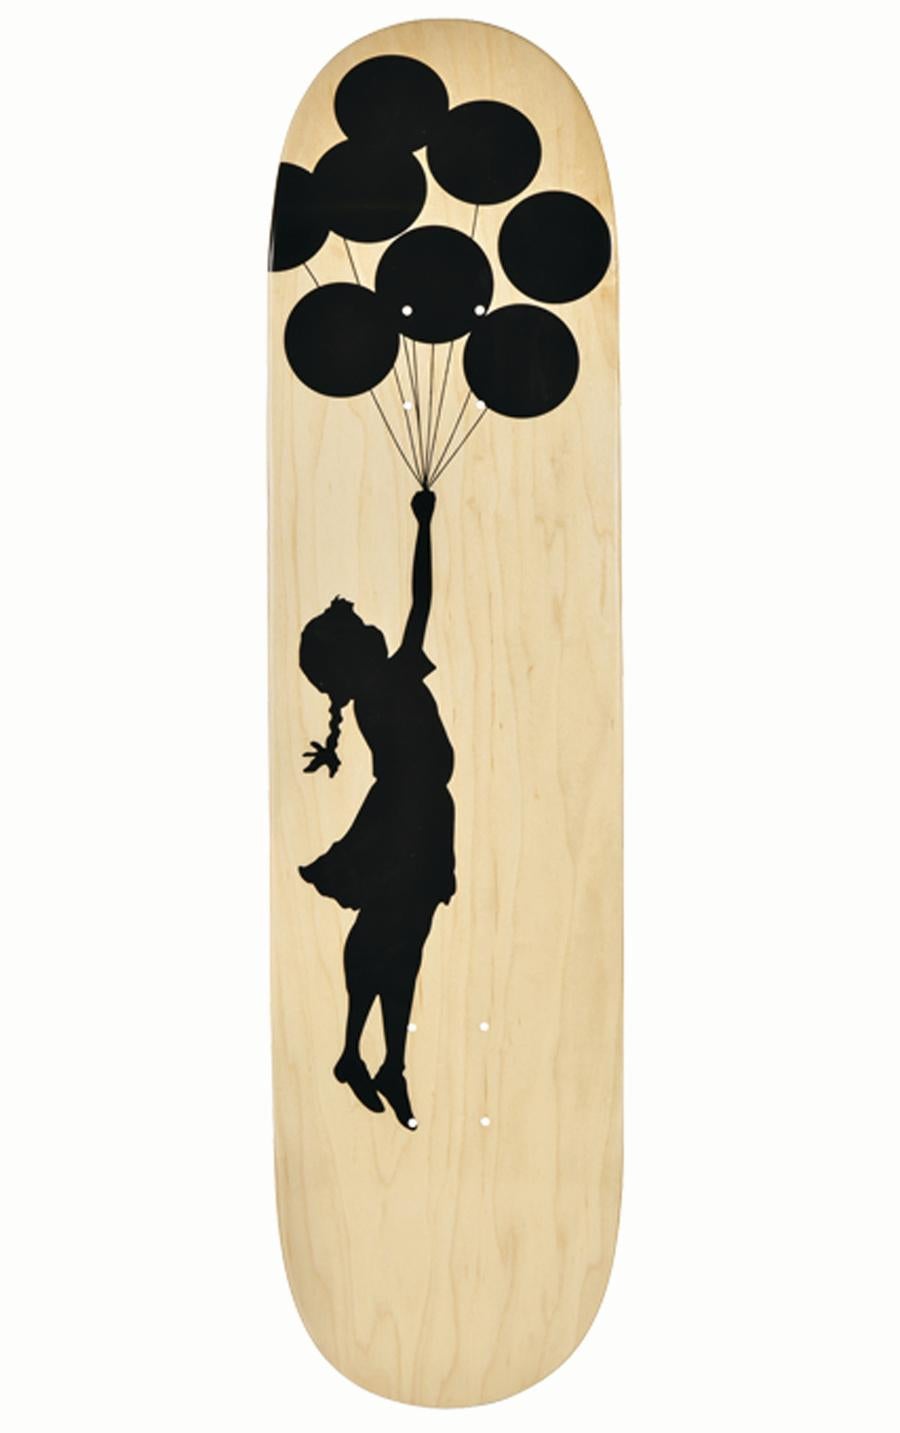 Skateboard-Deck mit Ballonfiguren – Print von Banksy